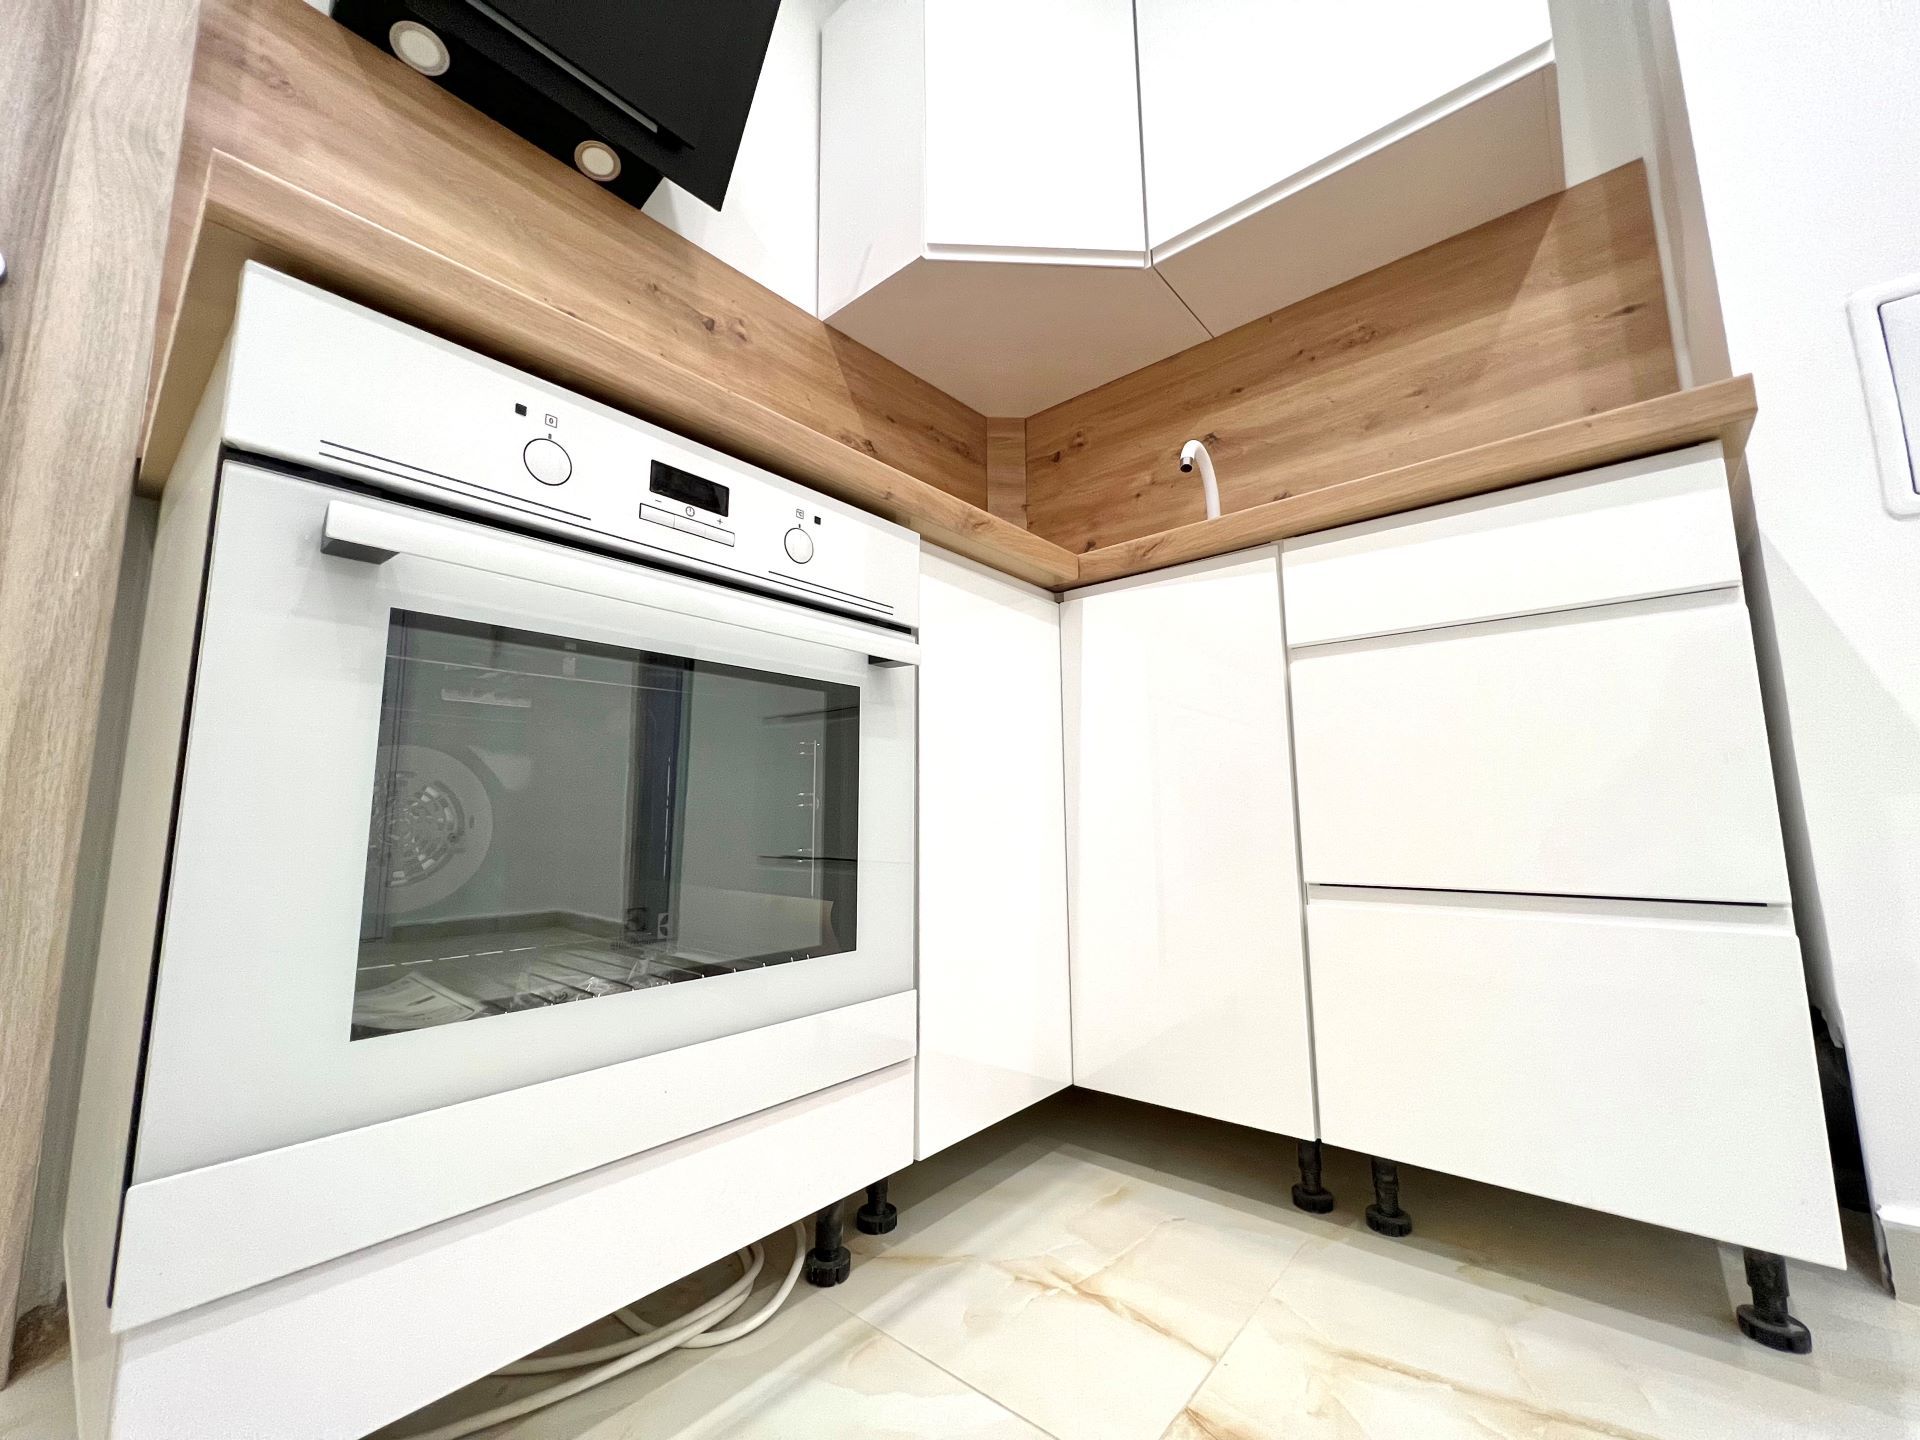 magasfényű fehér konyhabútor garanciális konyhai gépekkel 